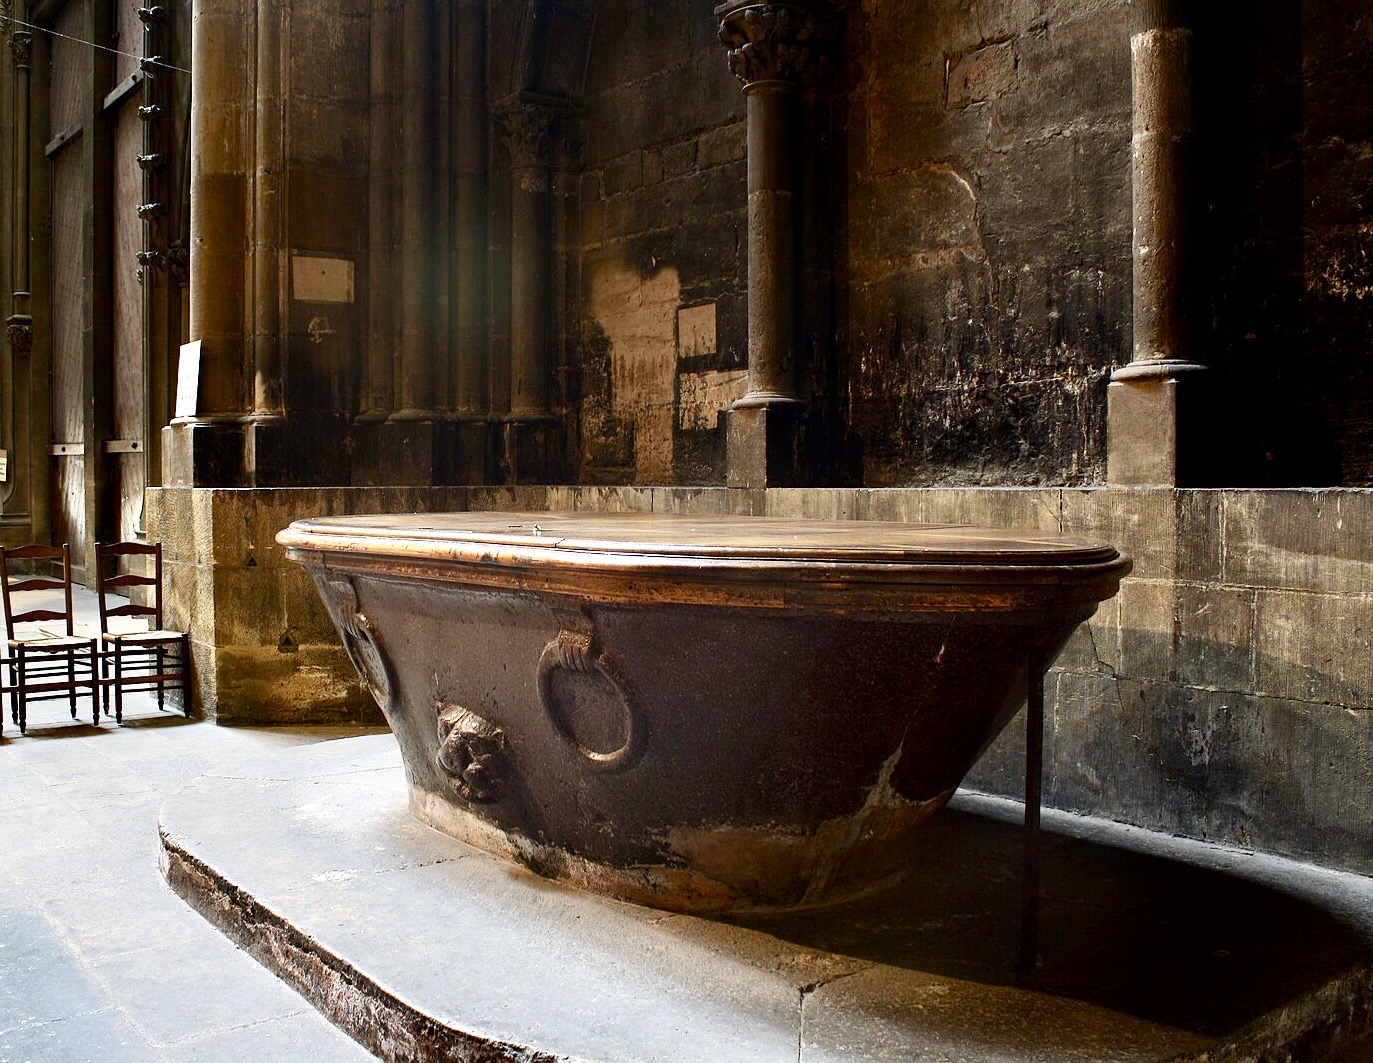 Bassin ou baignoire antique en porphyre formant les fonds baptismaux de la cathédrale de Metz.